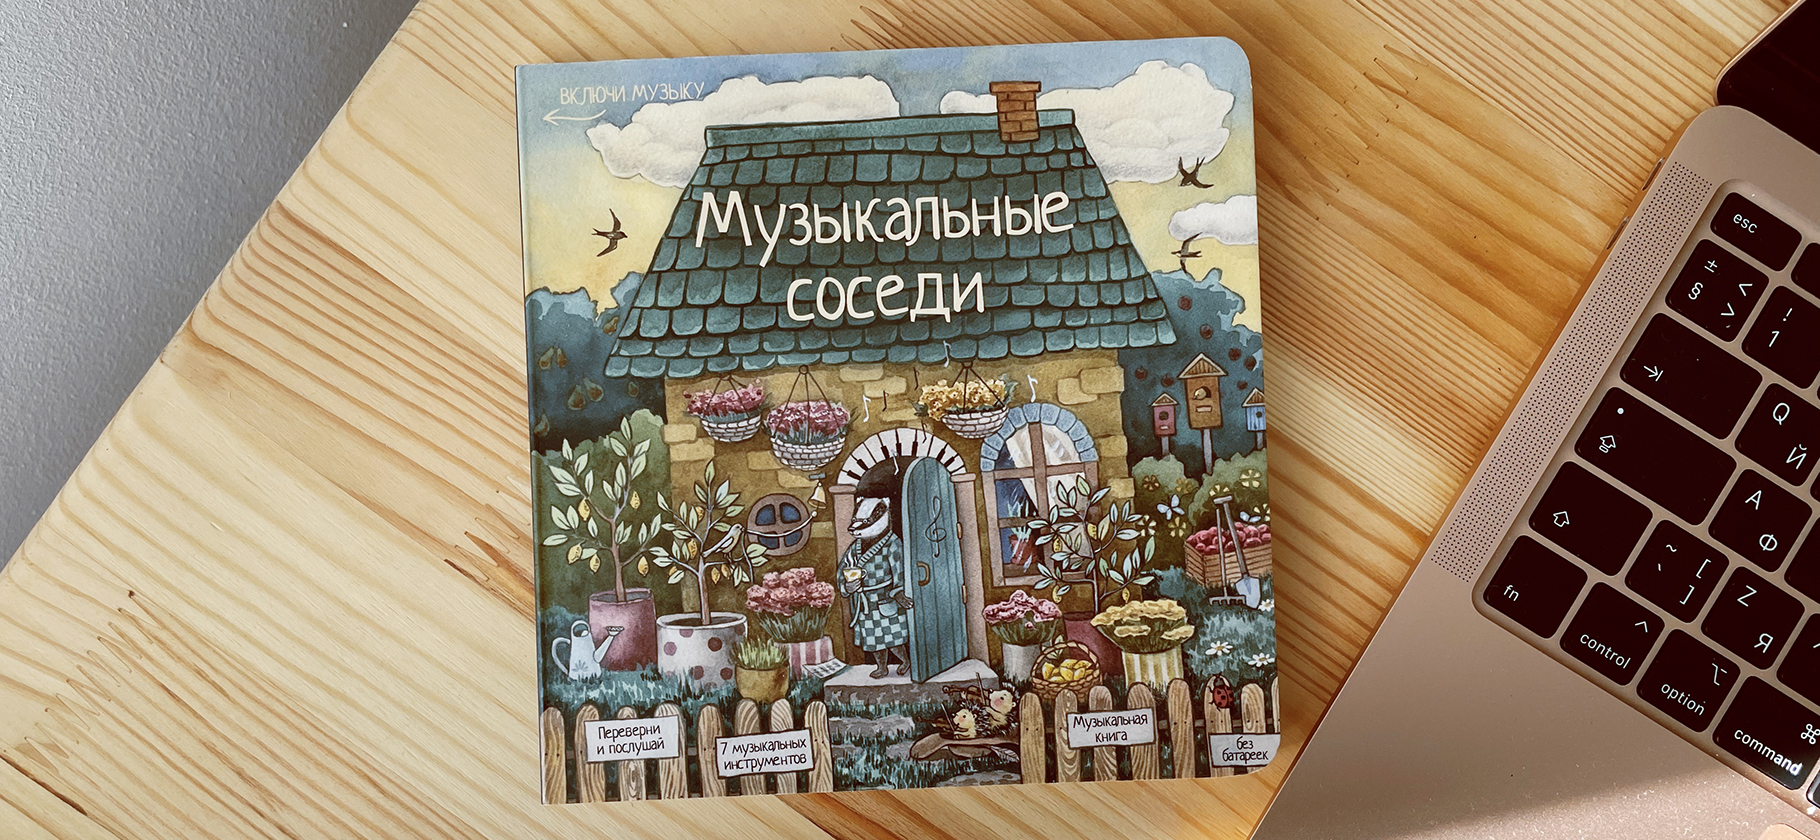 Бизнес: детское издательство в Нижнем Новгороде